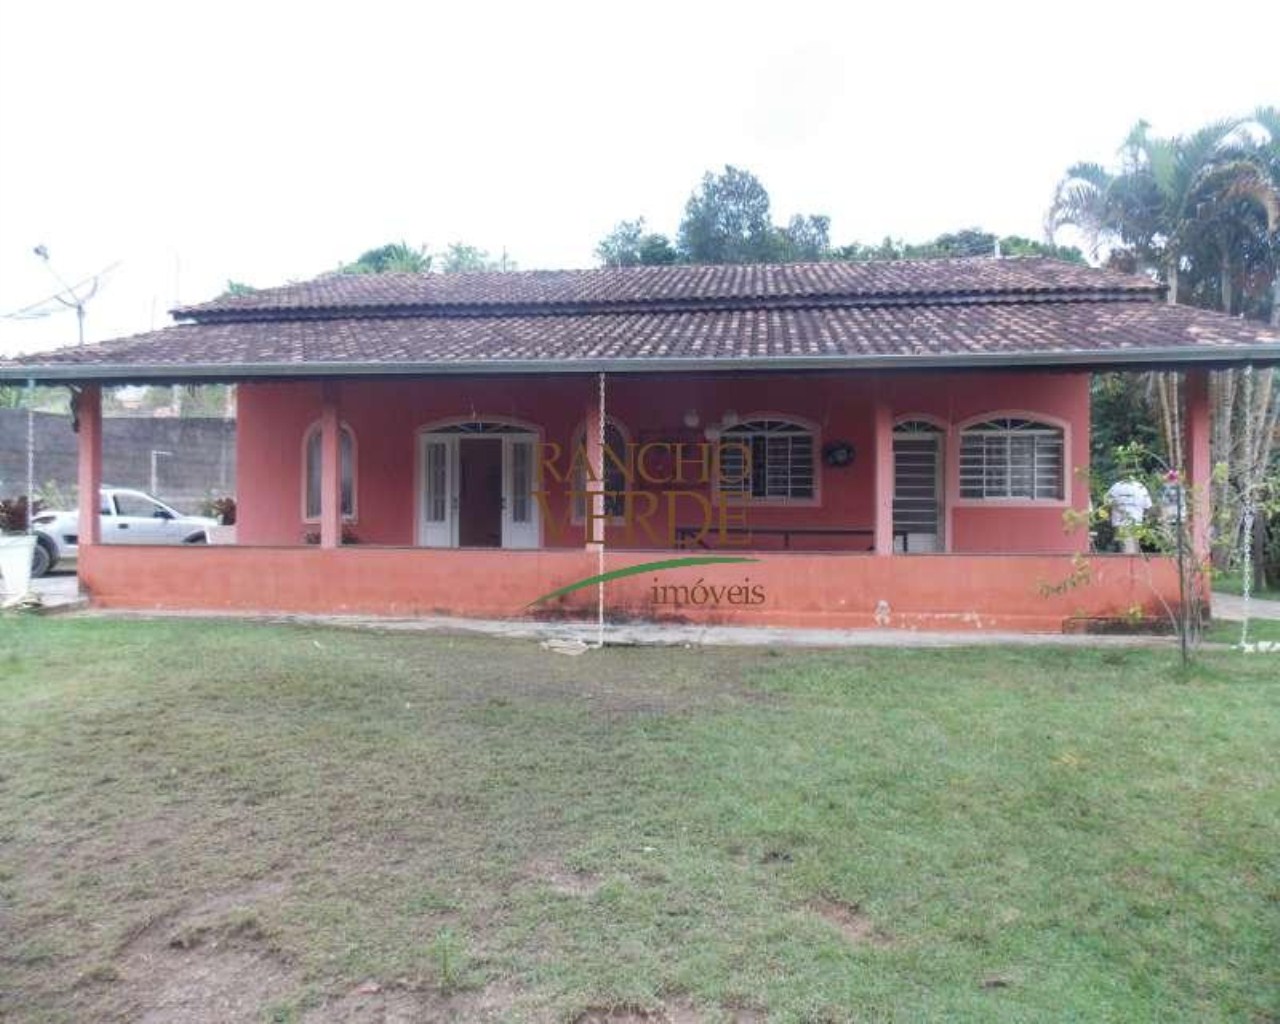 Chácara de 2.000 m² em São José dos Campos, SP